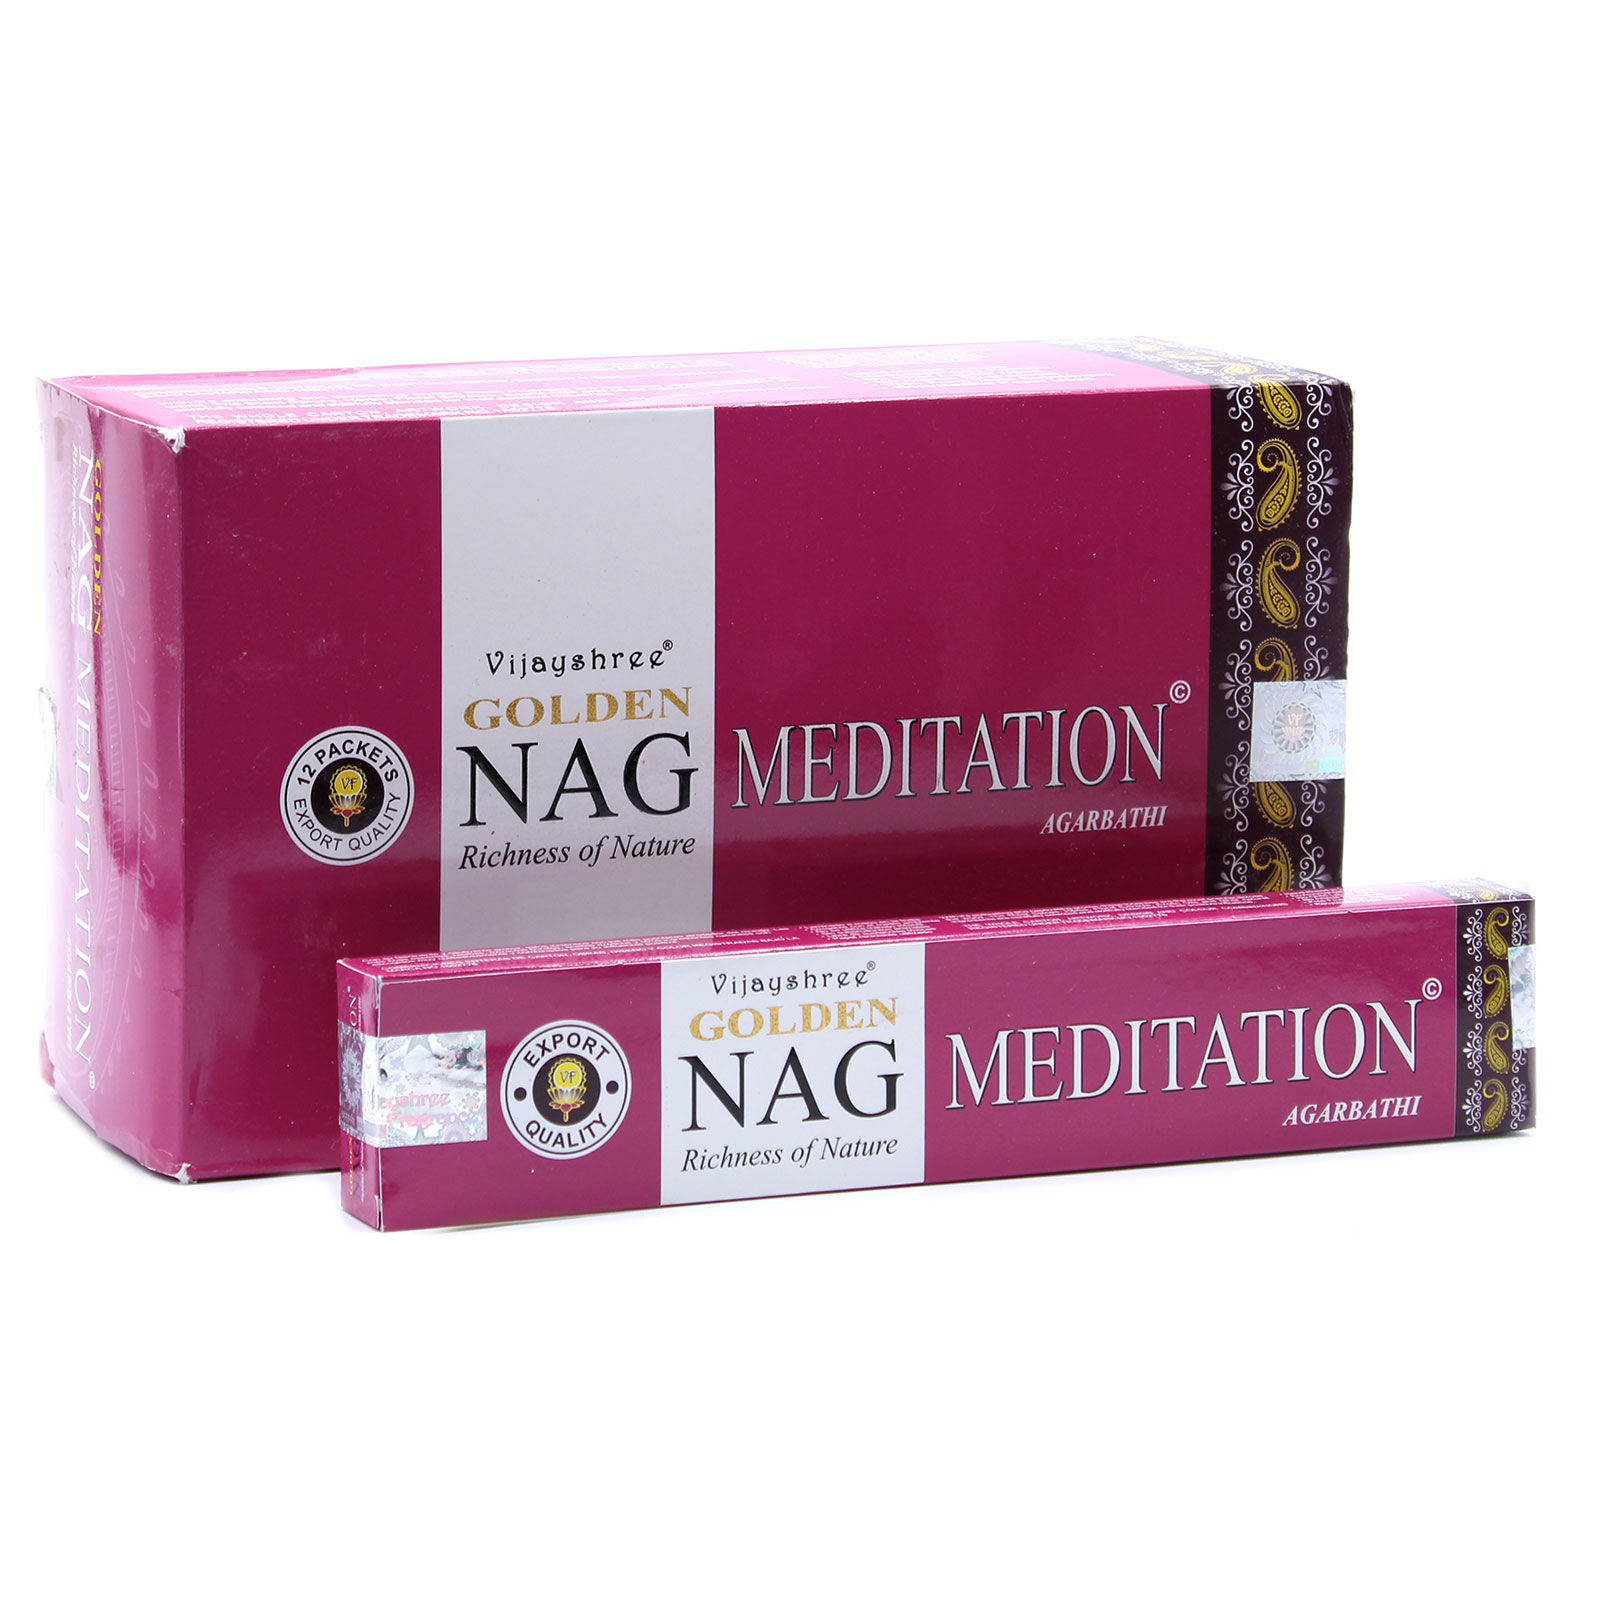 3 x Packs 15g Golden Nag - Meditation Incense